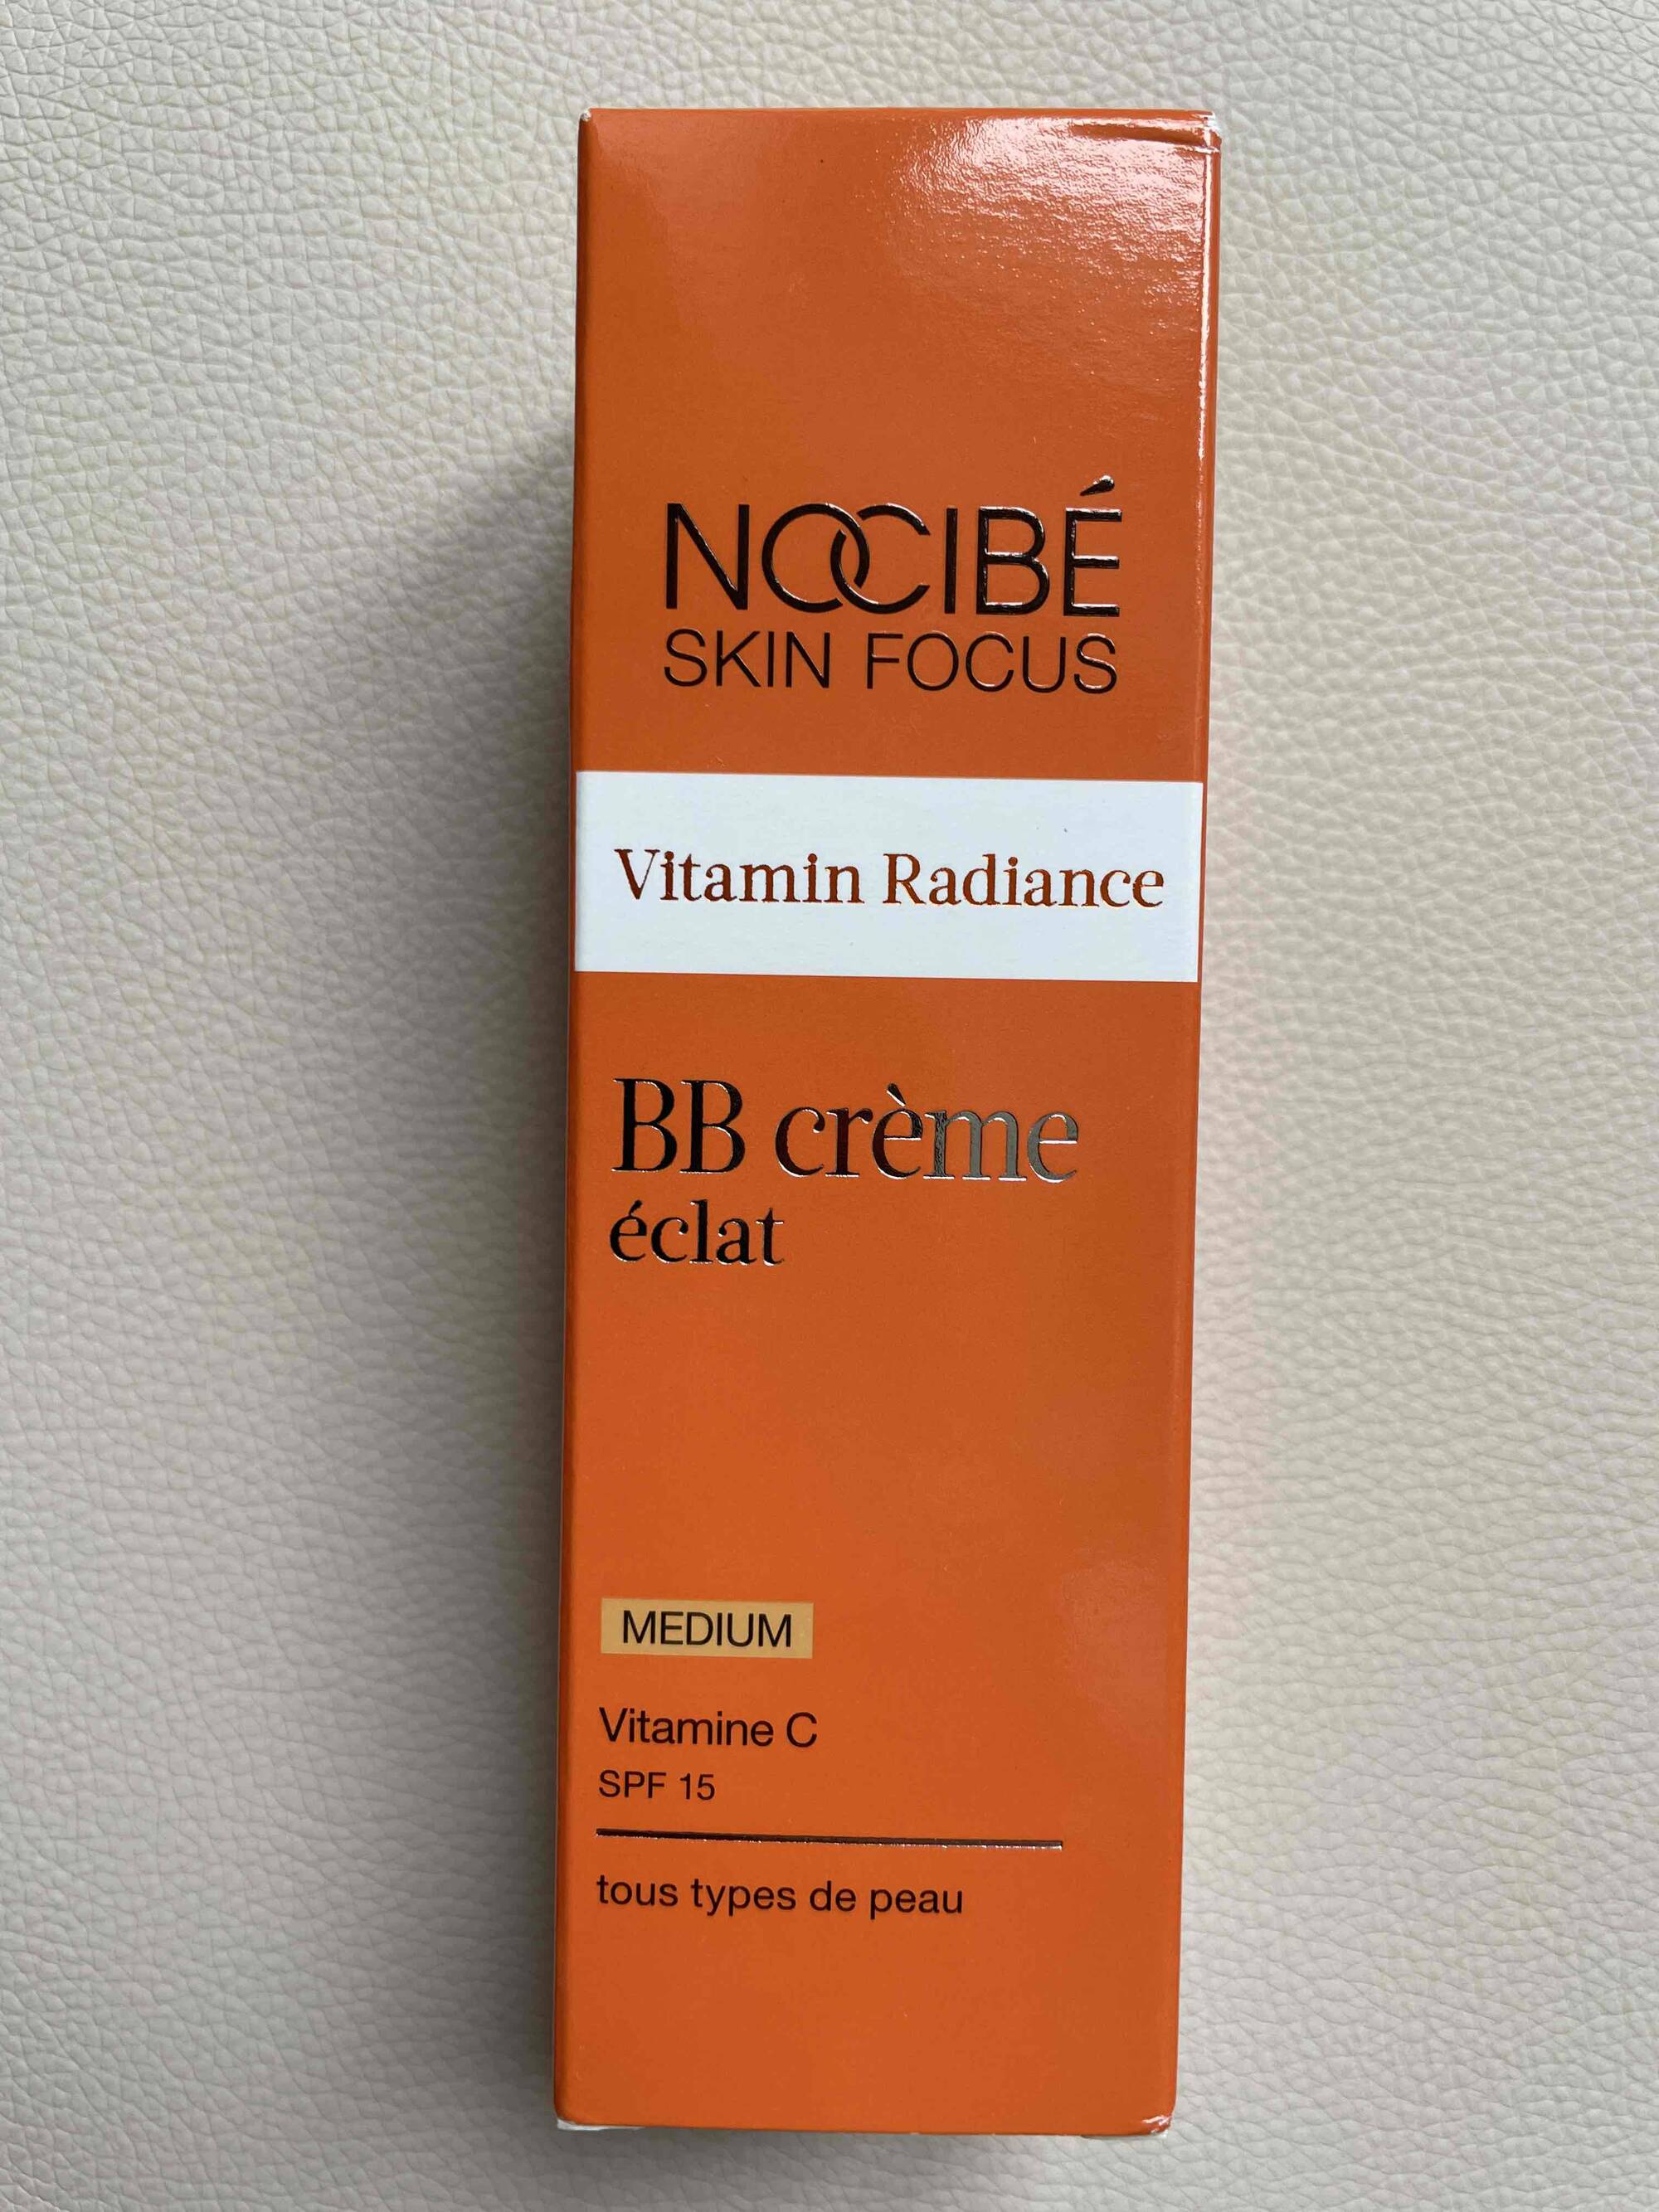 NOCIBÉ - Vitamin Radiance - BB crème éclat